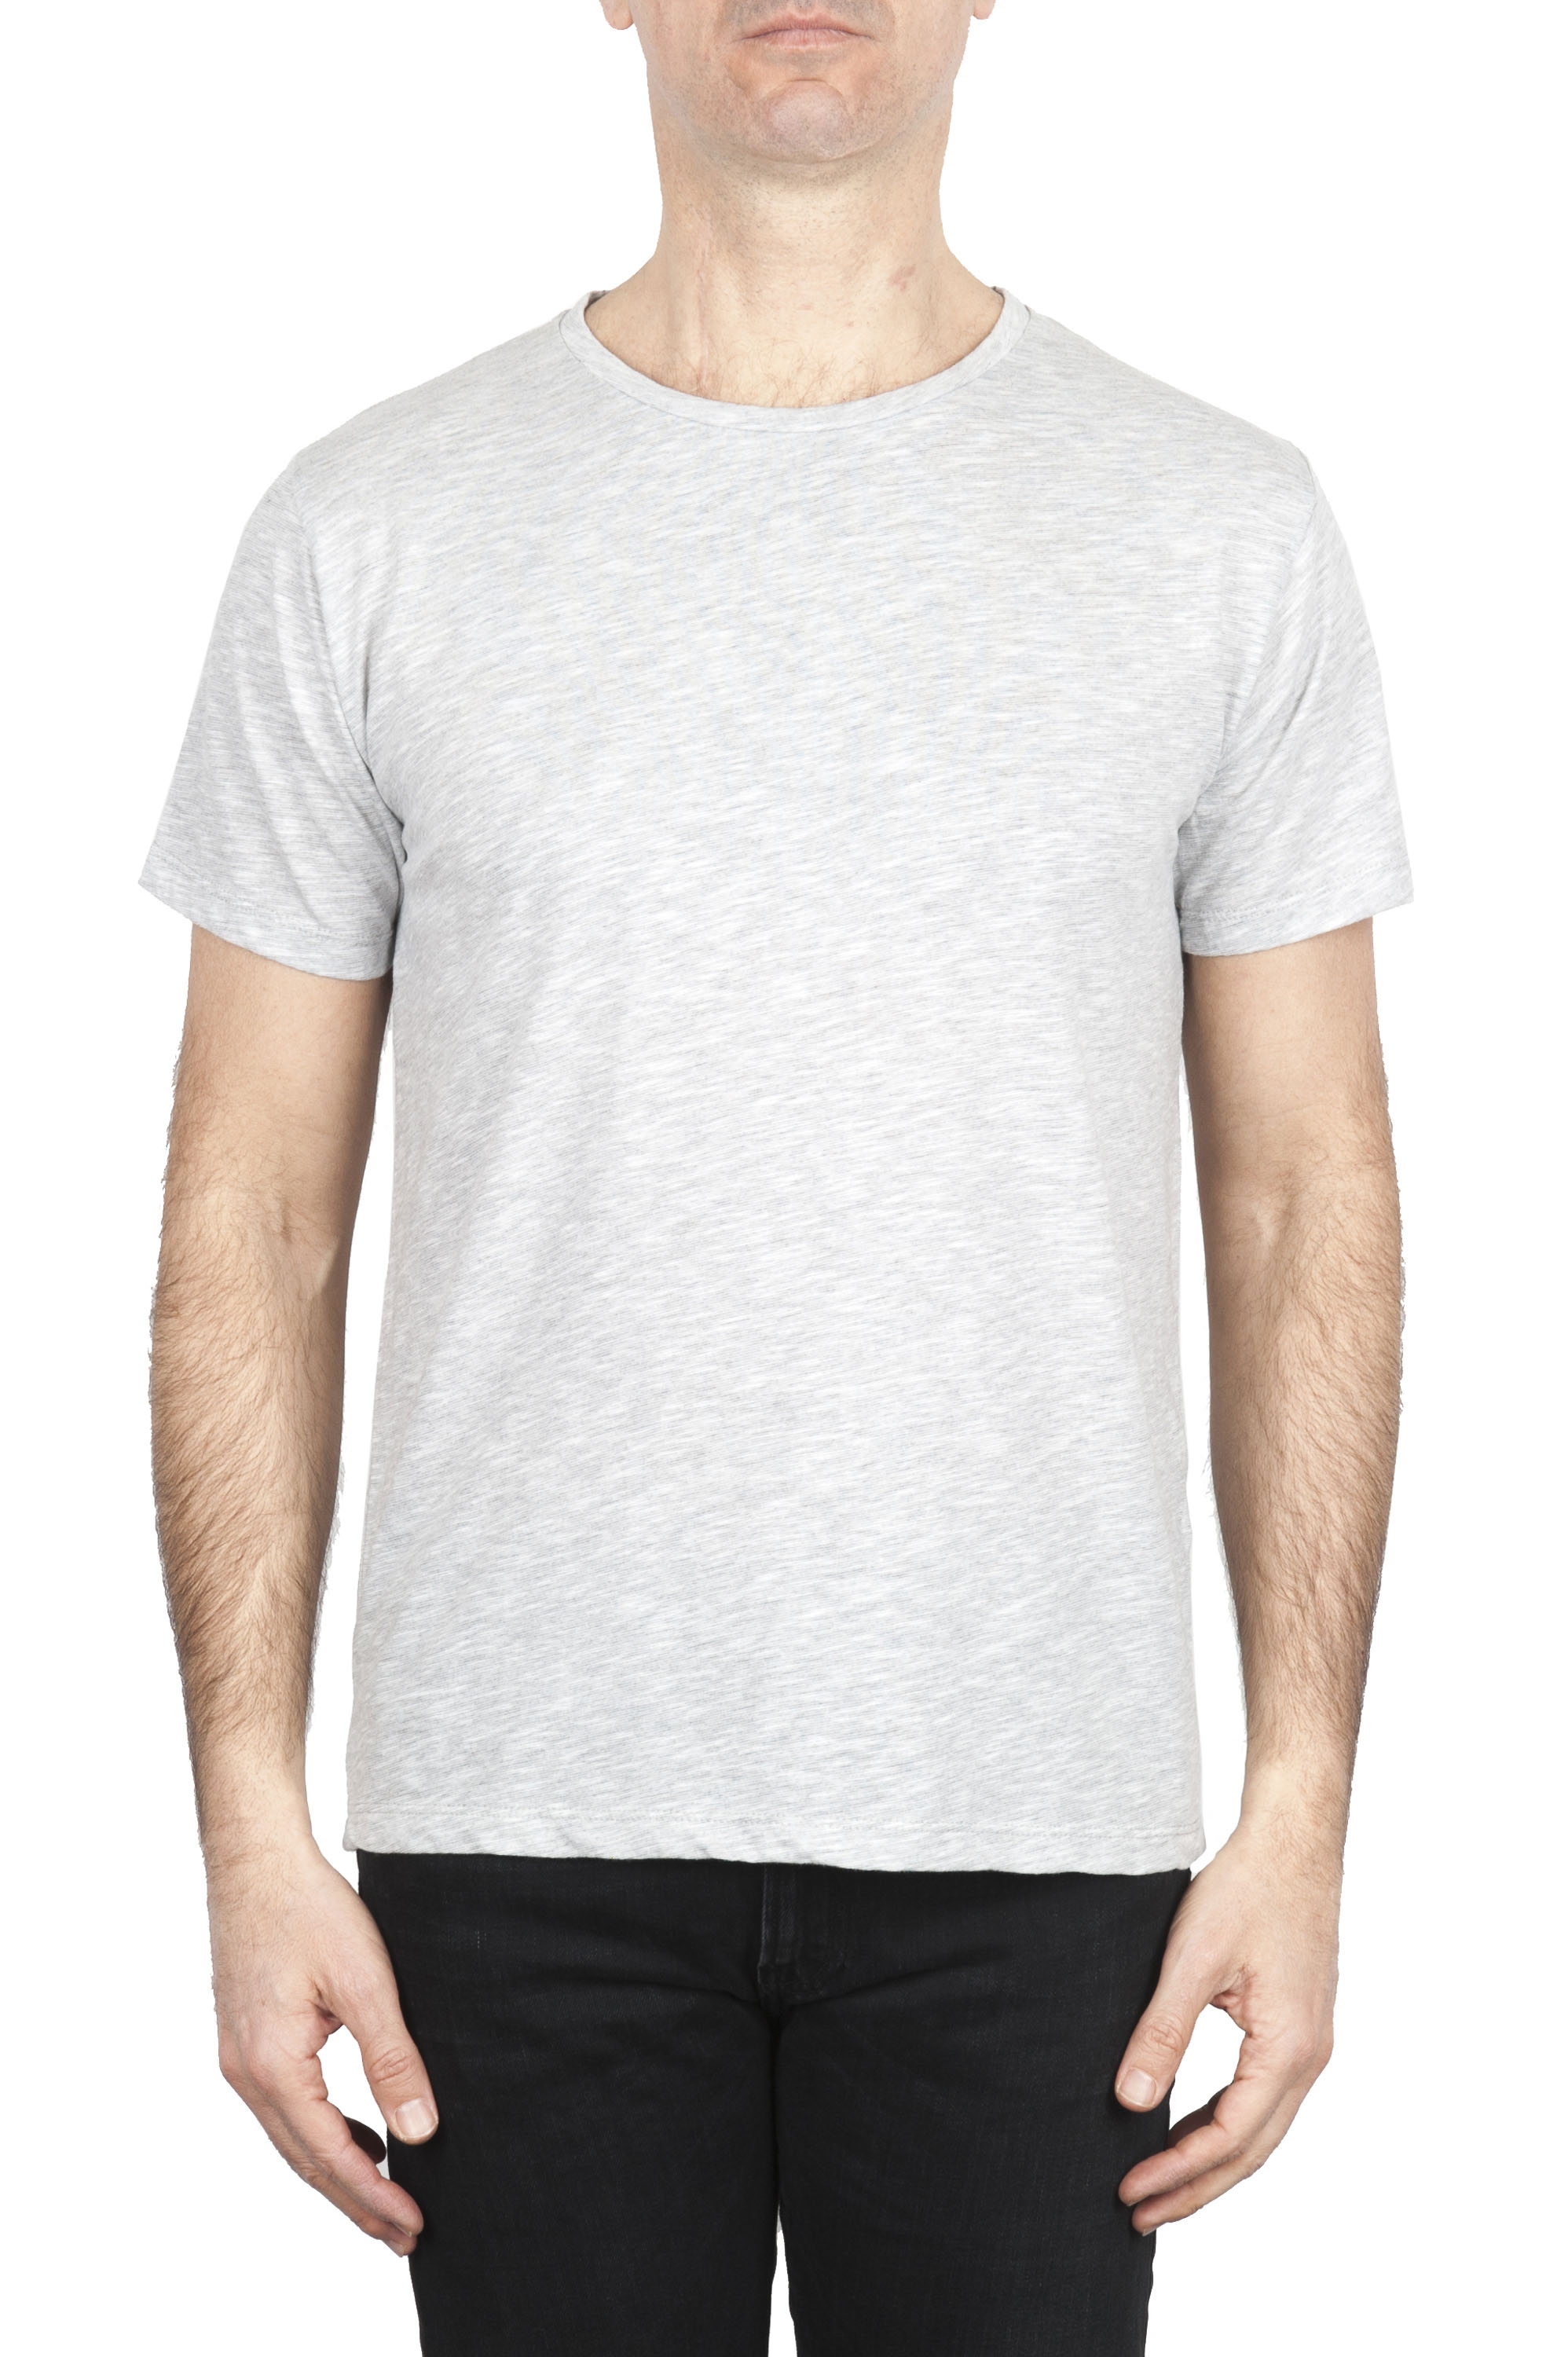 SBU 01646 Flamed cotton scoop neck t-shirt melange grey 01